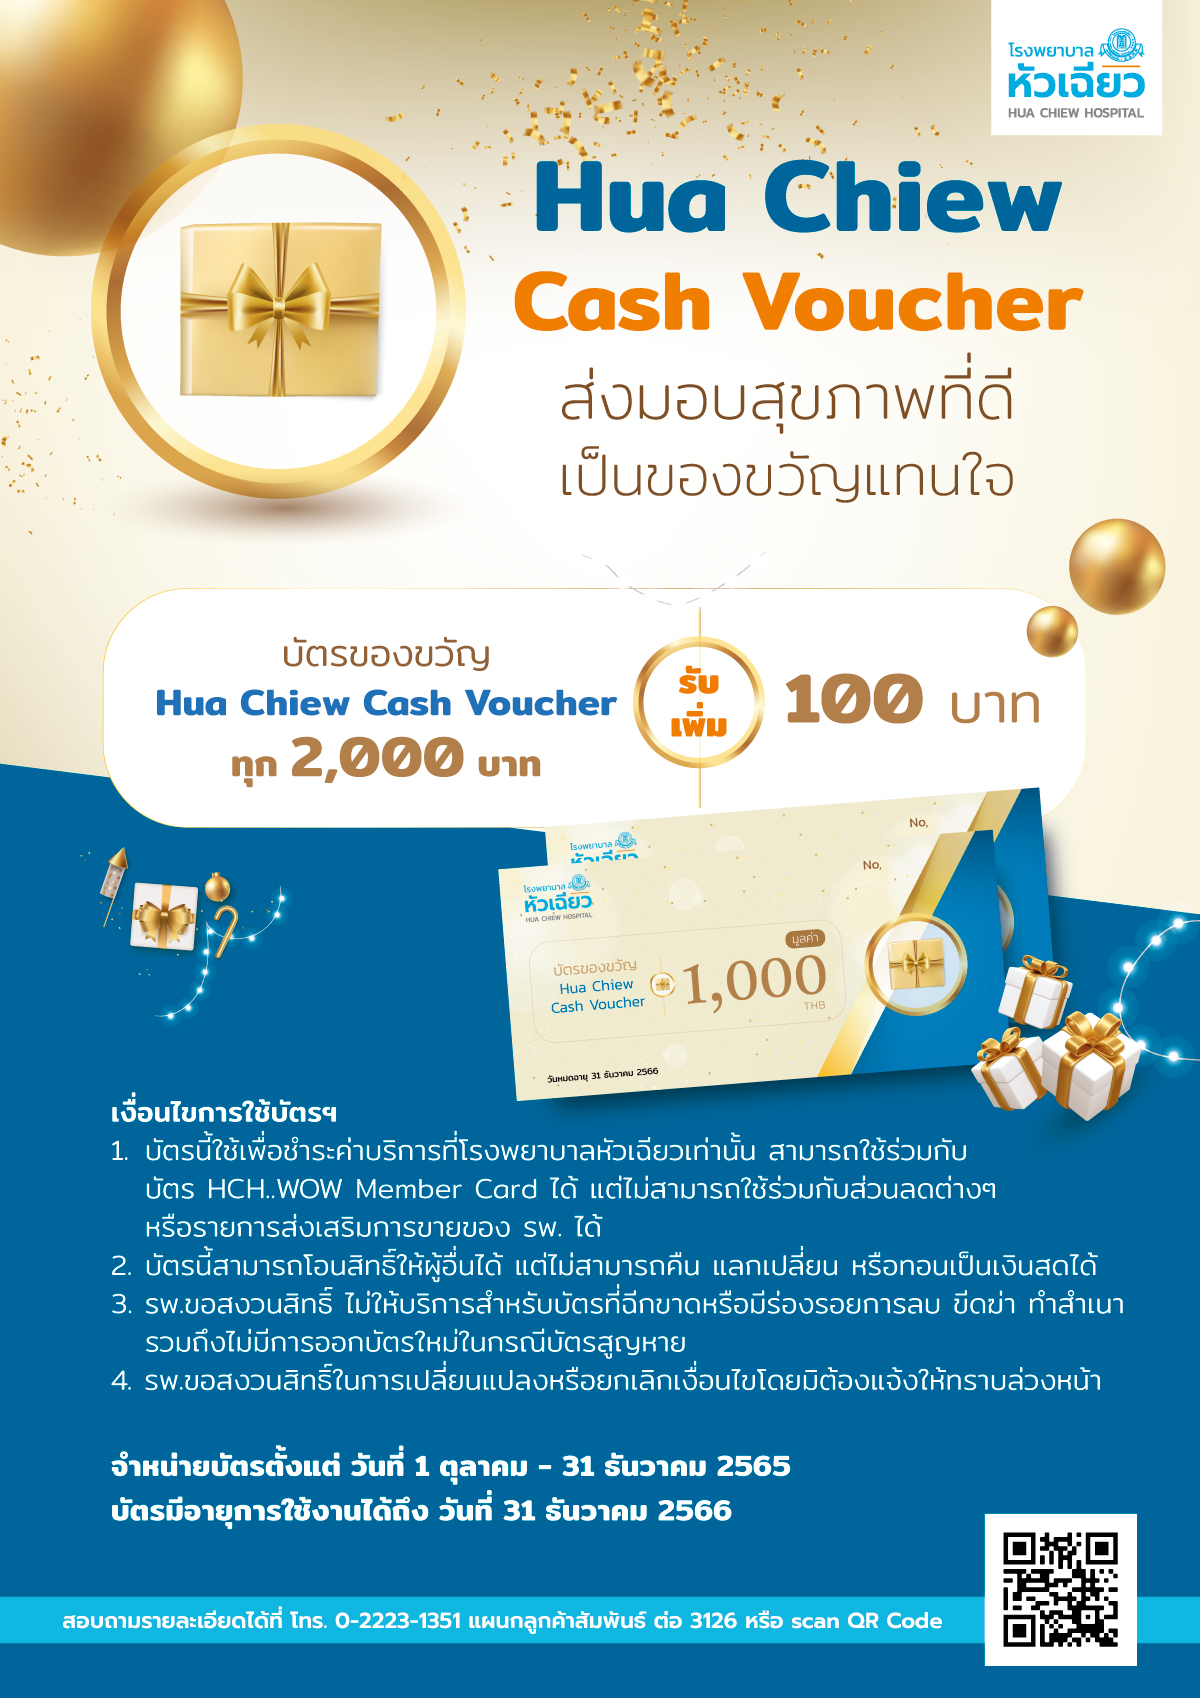 บัตรของขวัญ Hua Chiew Cash Voucher ส่งมอบสุขภาพที่ดี เป็นของขวัญแทนใจ บัตรของขวัญแทนเงินสดทุก 2,000 บาท รับเพิ่ม 100 บาท